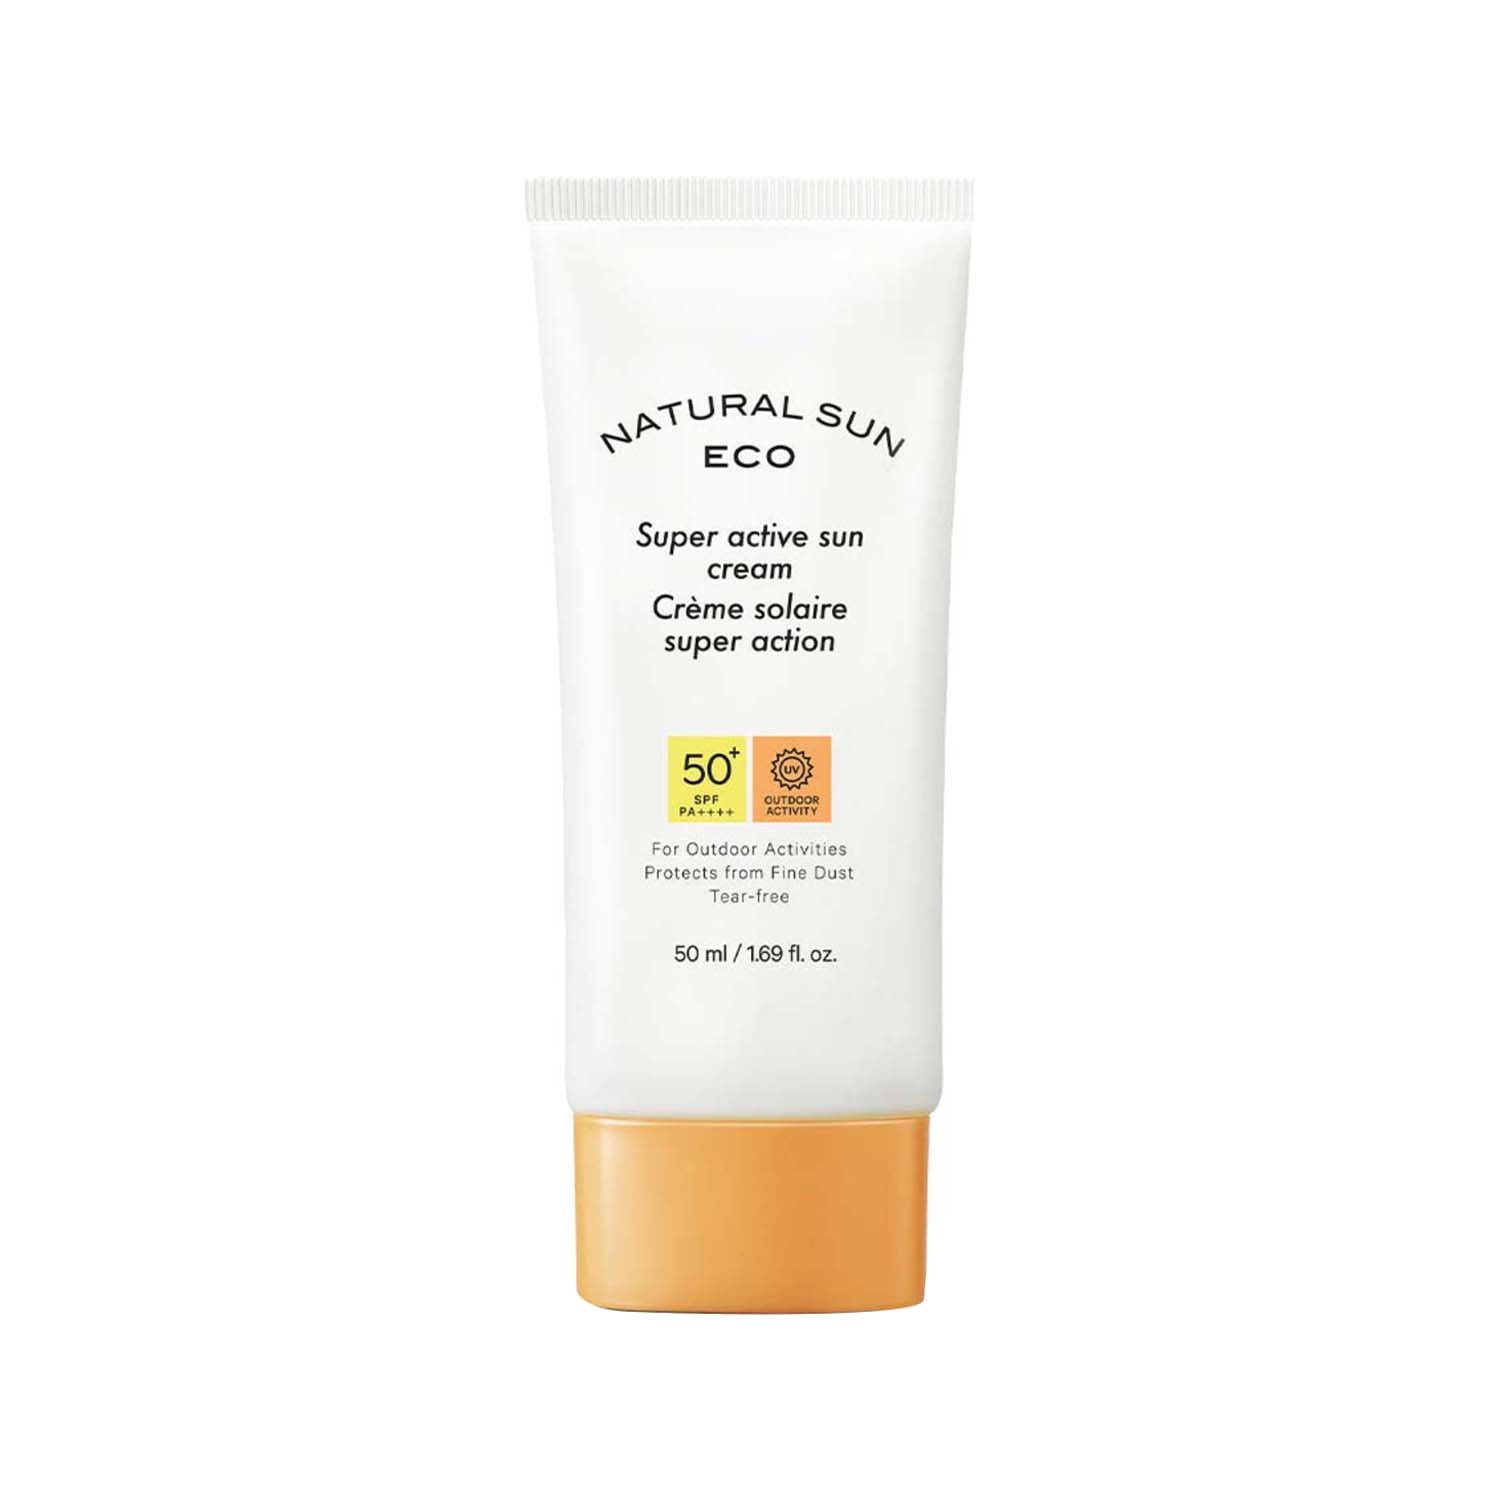 The Face Shop | The Face Shop Naturalsun Eco Super Active SPF 50+ Sun Cream (50ml)